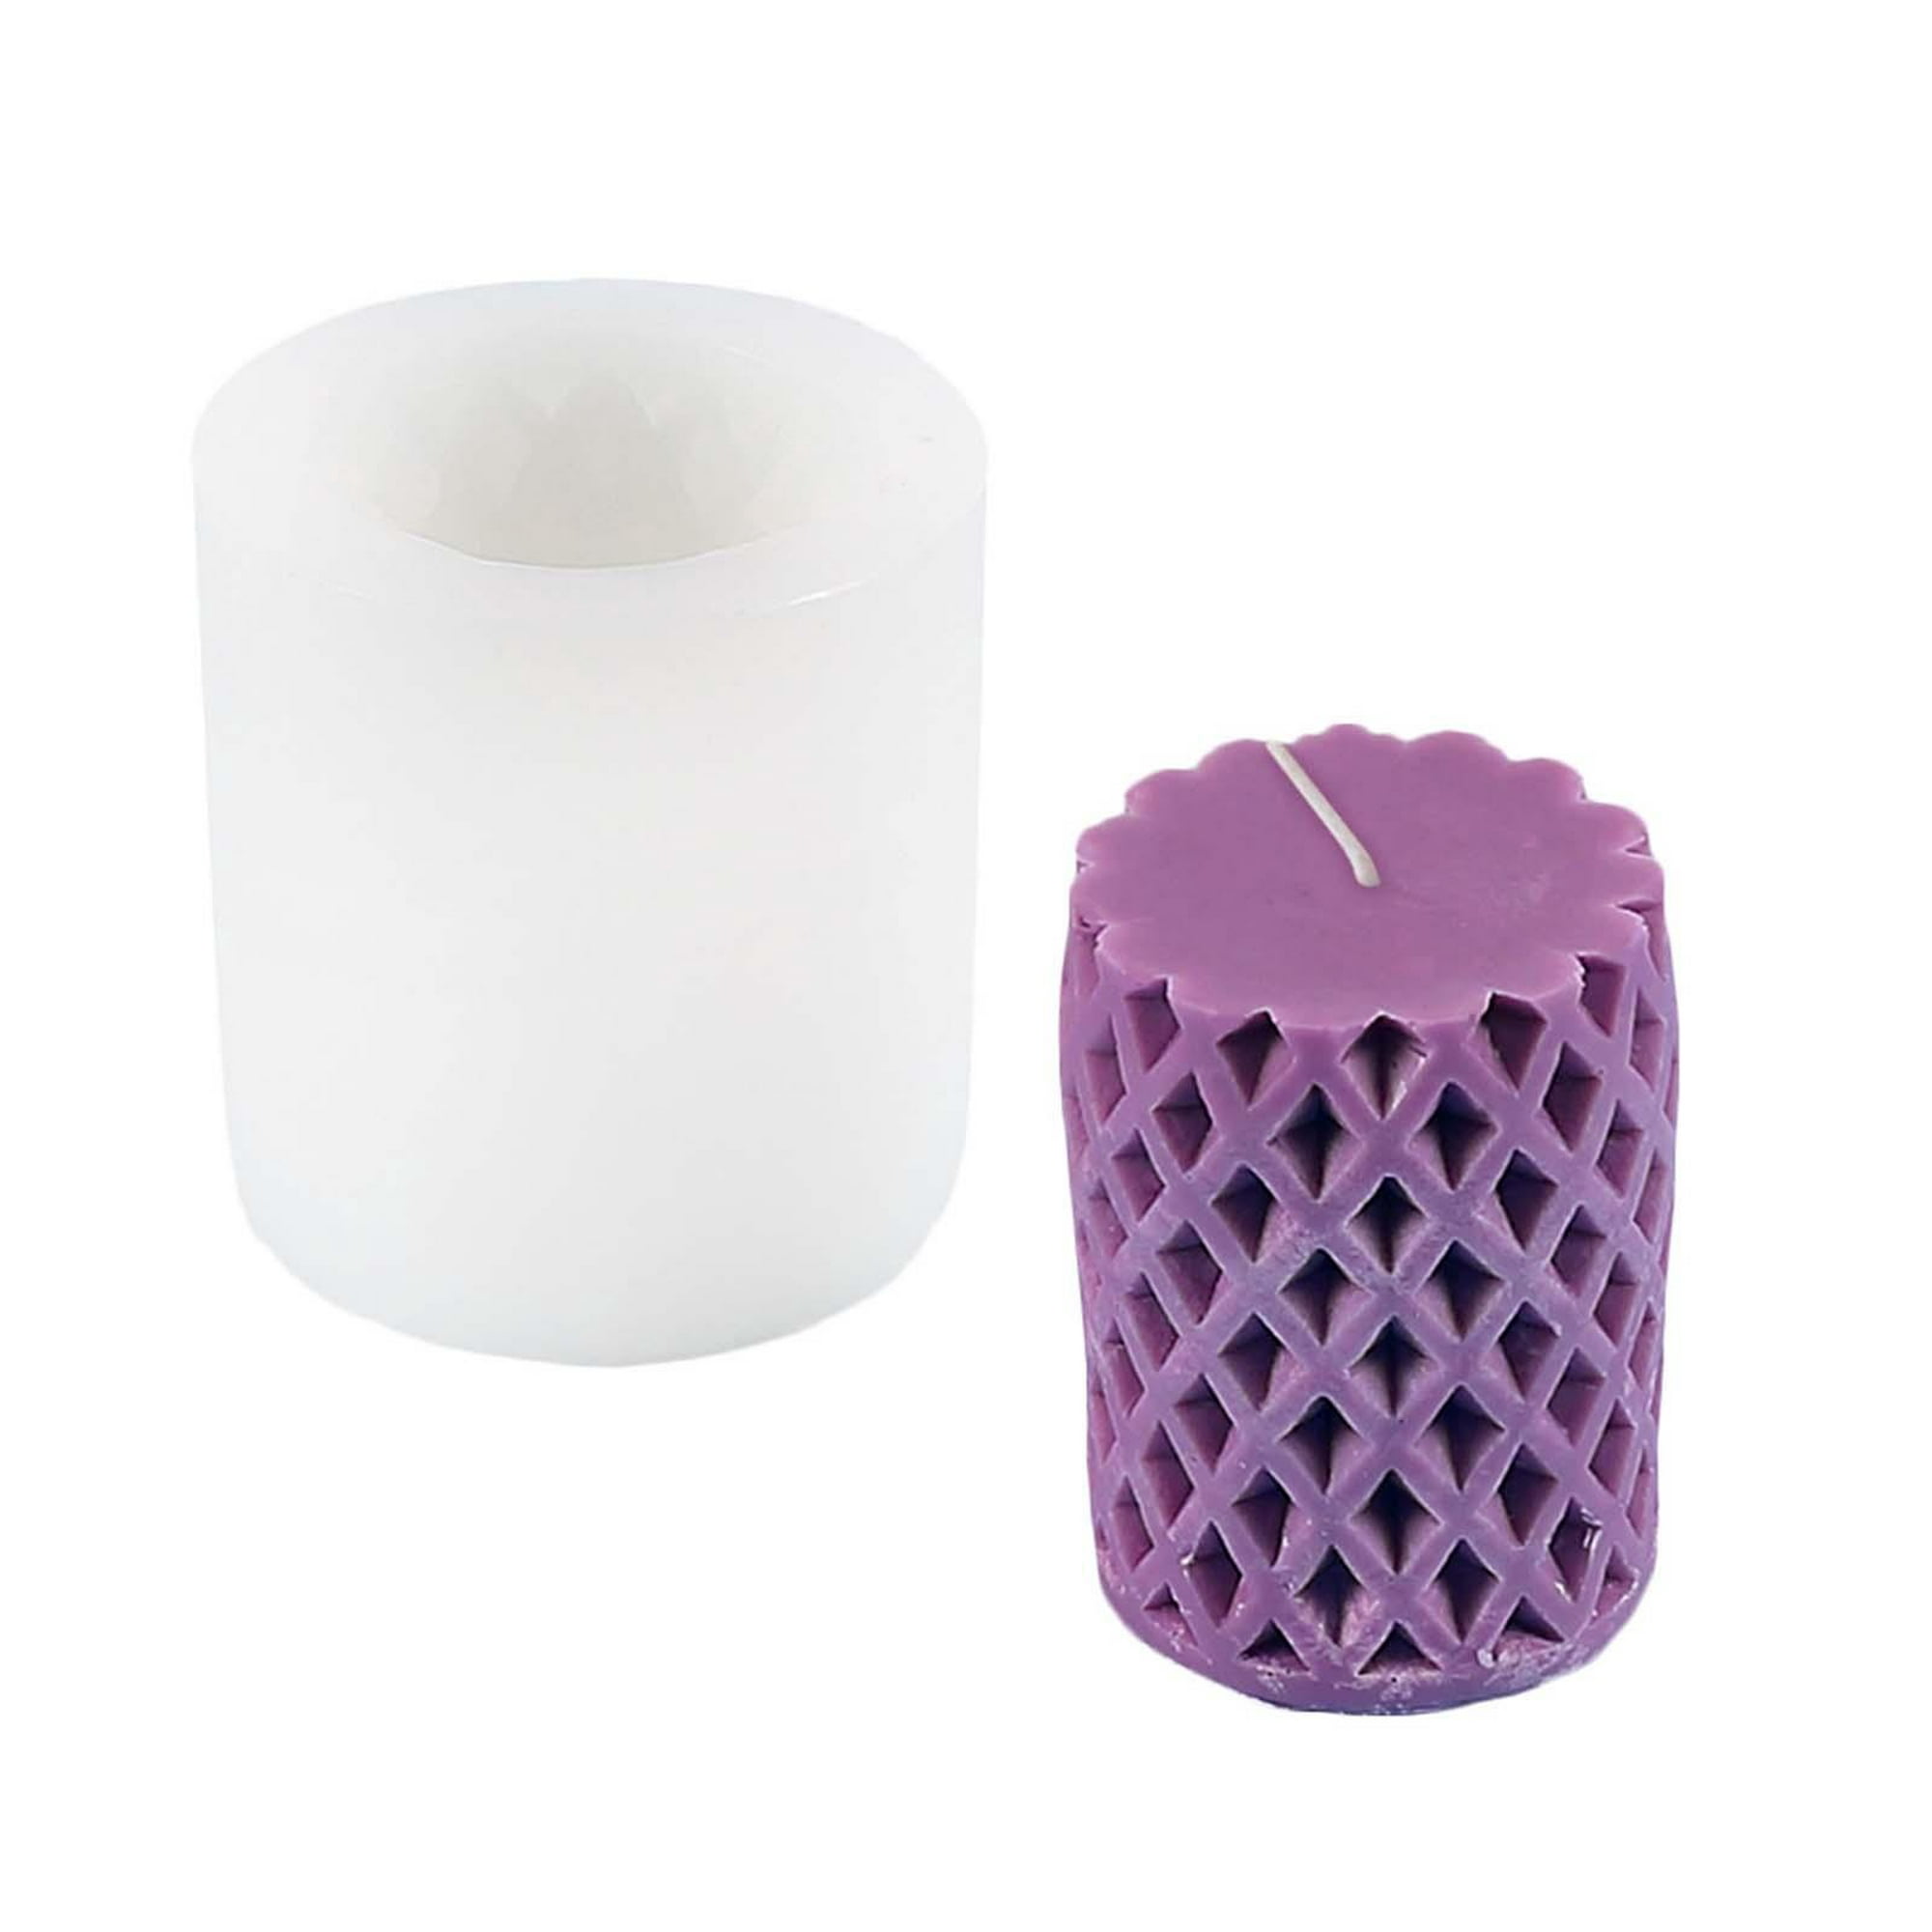 3 moldes de vela de silicona para hacer velas, moldes de resina, kit de  silicona cilíndrica de fundición epoxi, 3 tamaños, moldes de silicona para